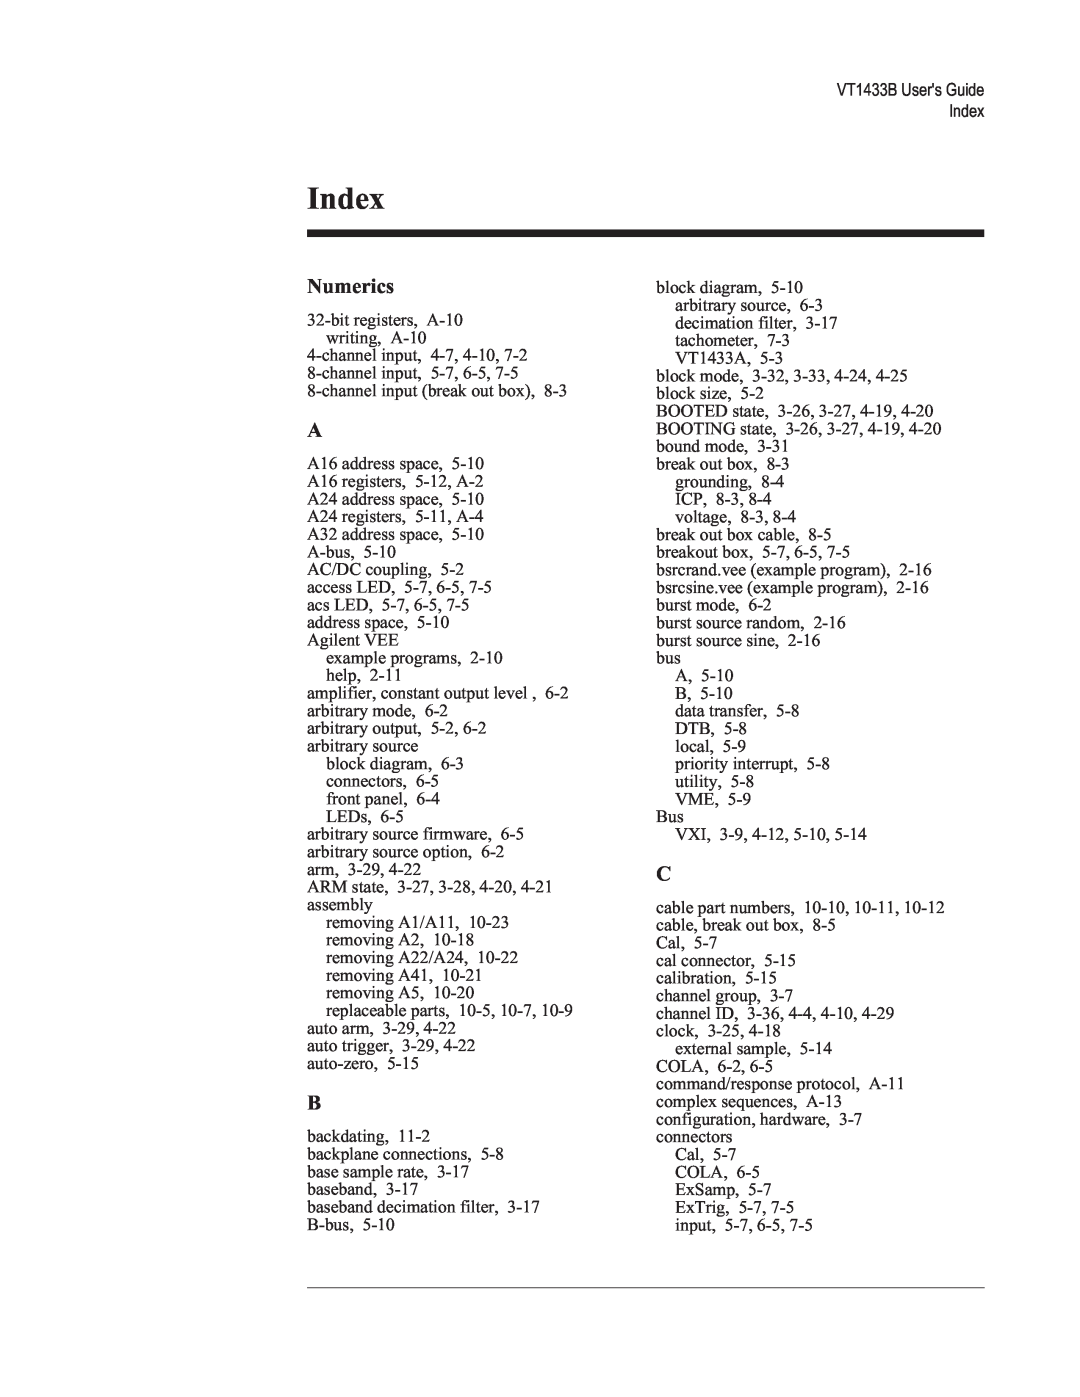 VXI VT1433B manual Numerics, Index 